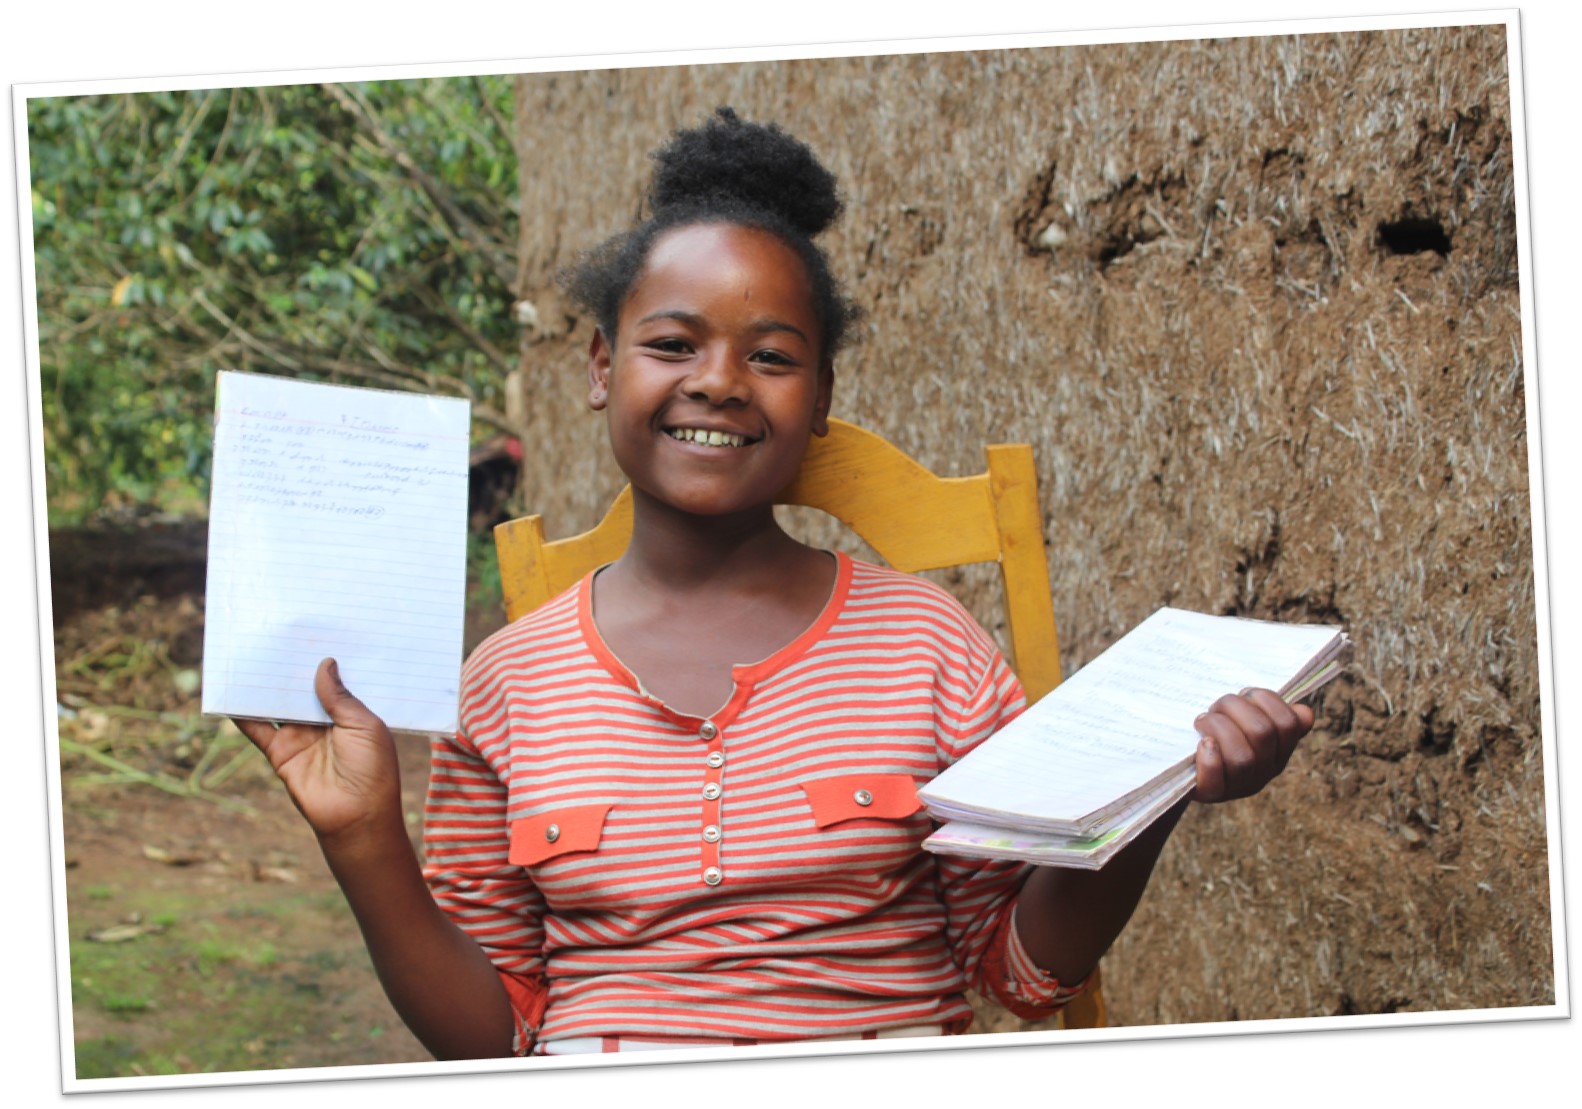 Cesta za vzděláním: „Jednou chci pomáhat ženám,“ říká dvanáctiletá Emnet z Etiopie | Skutečný dárek